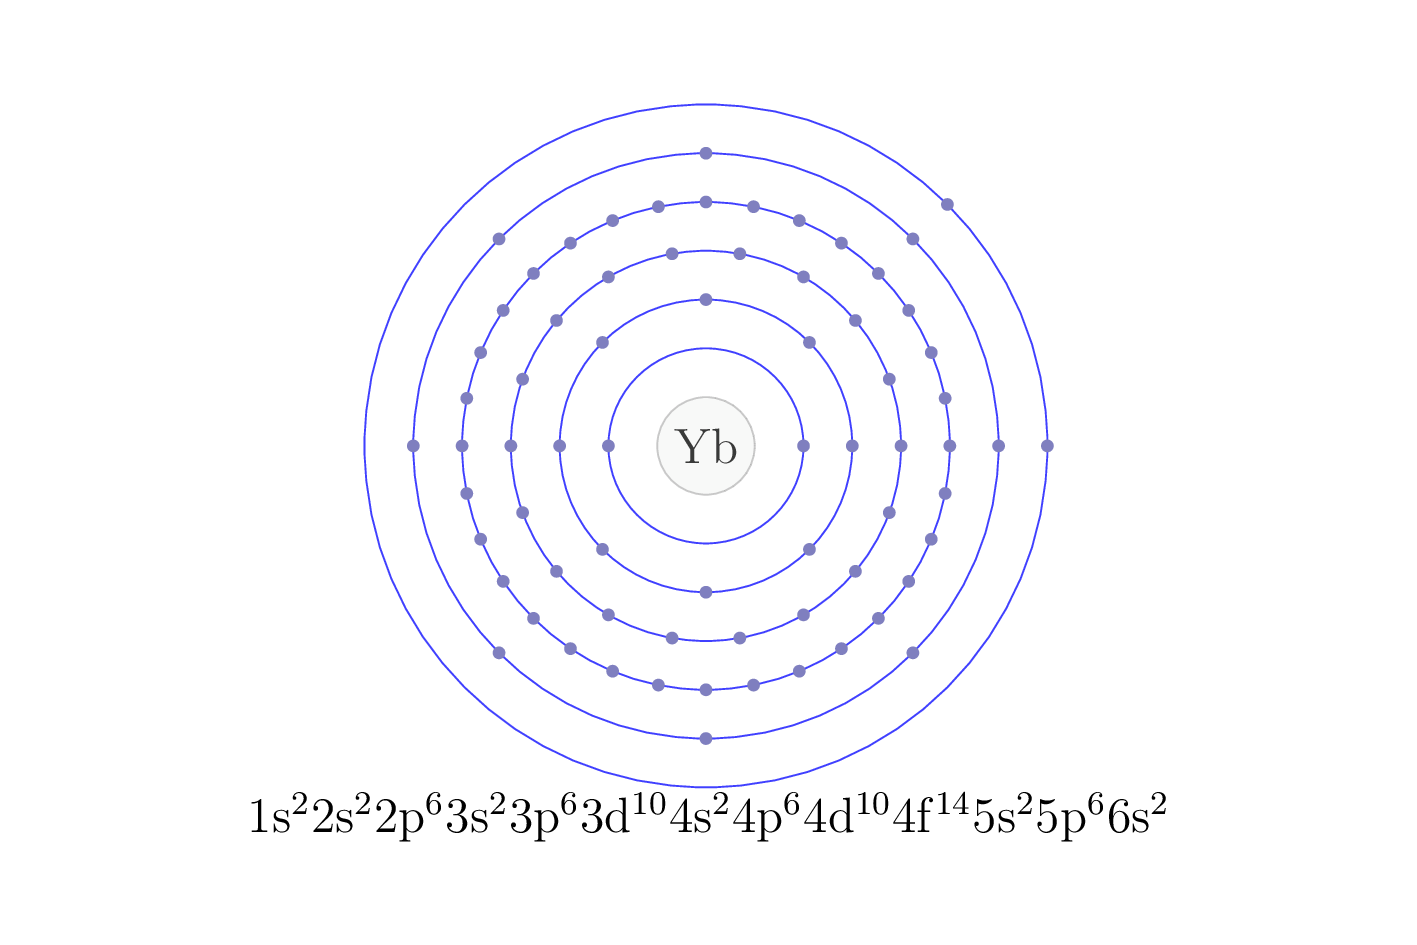 electron configuration of element Yb